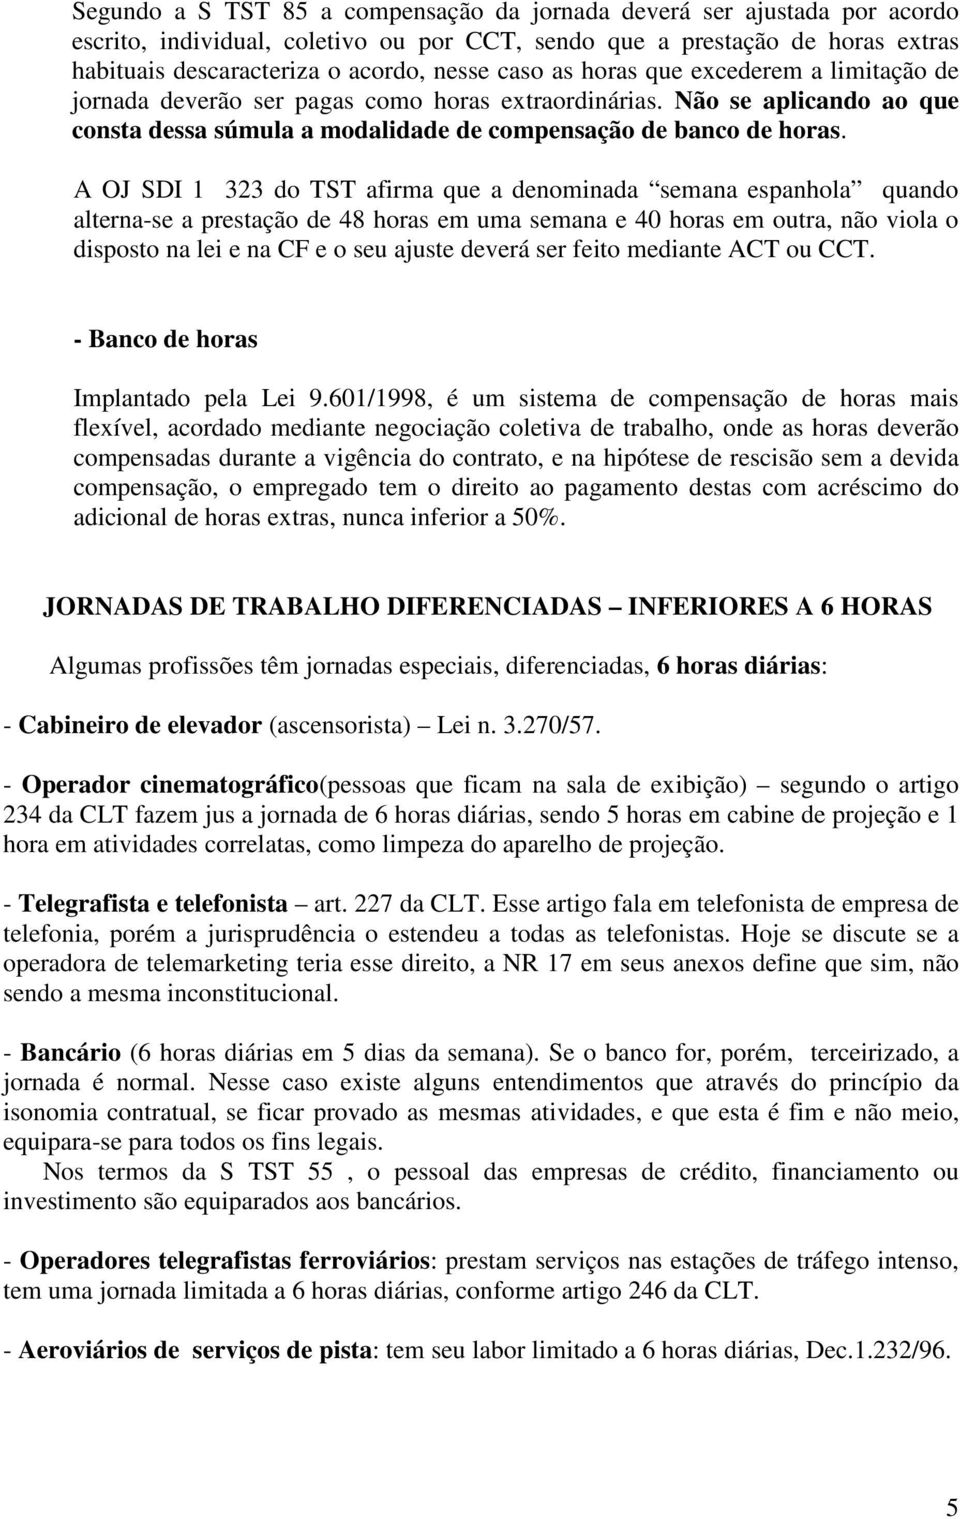 A OJ SDI 1 323 do TST afirma que a denominada semana espanhola quando alterna-se a prestação de 48 horas em uma semana e 40 horas em outra, não viola o disposto na lei e na CF e o seu ajuste deverá